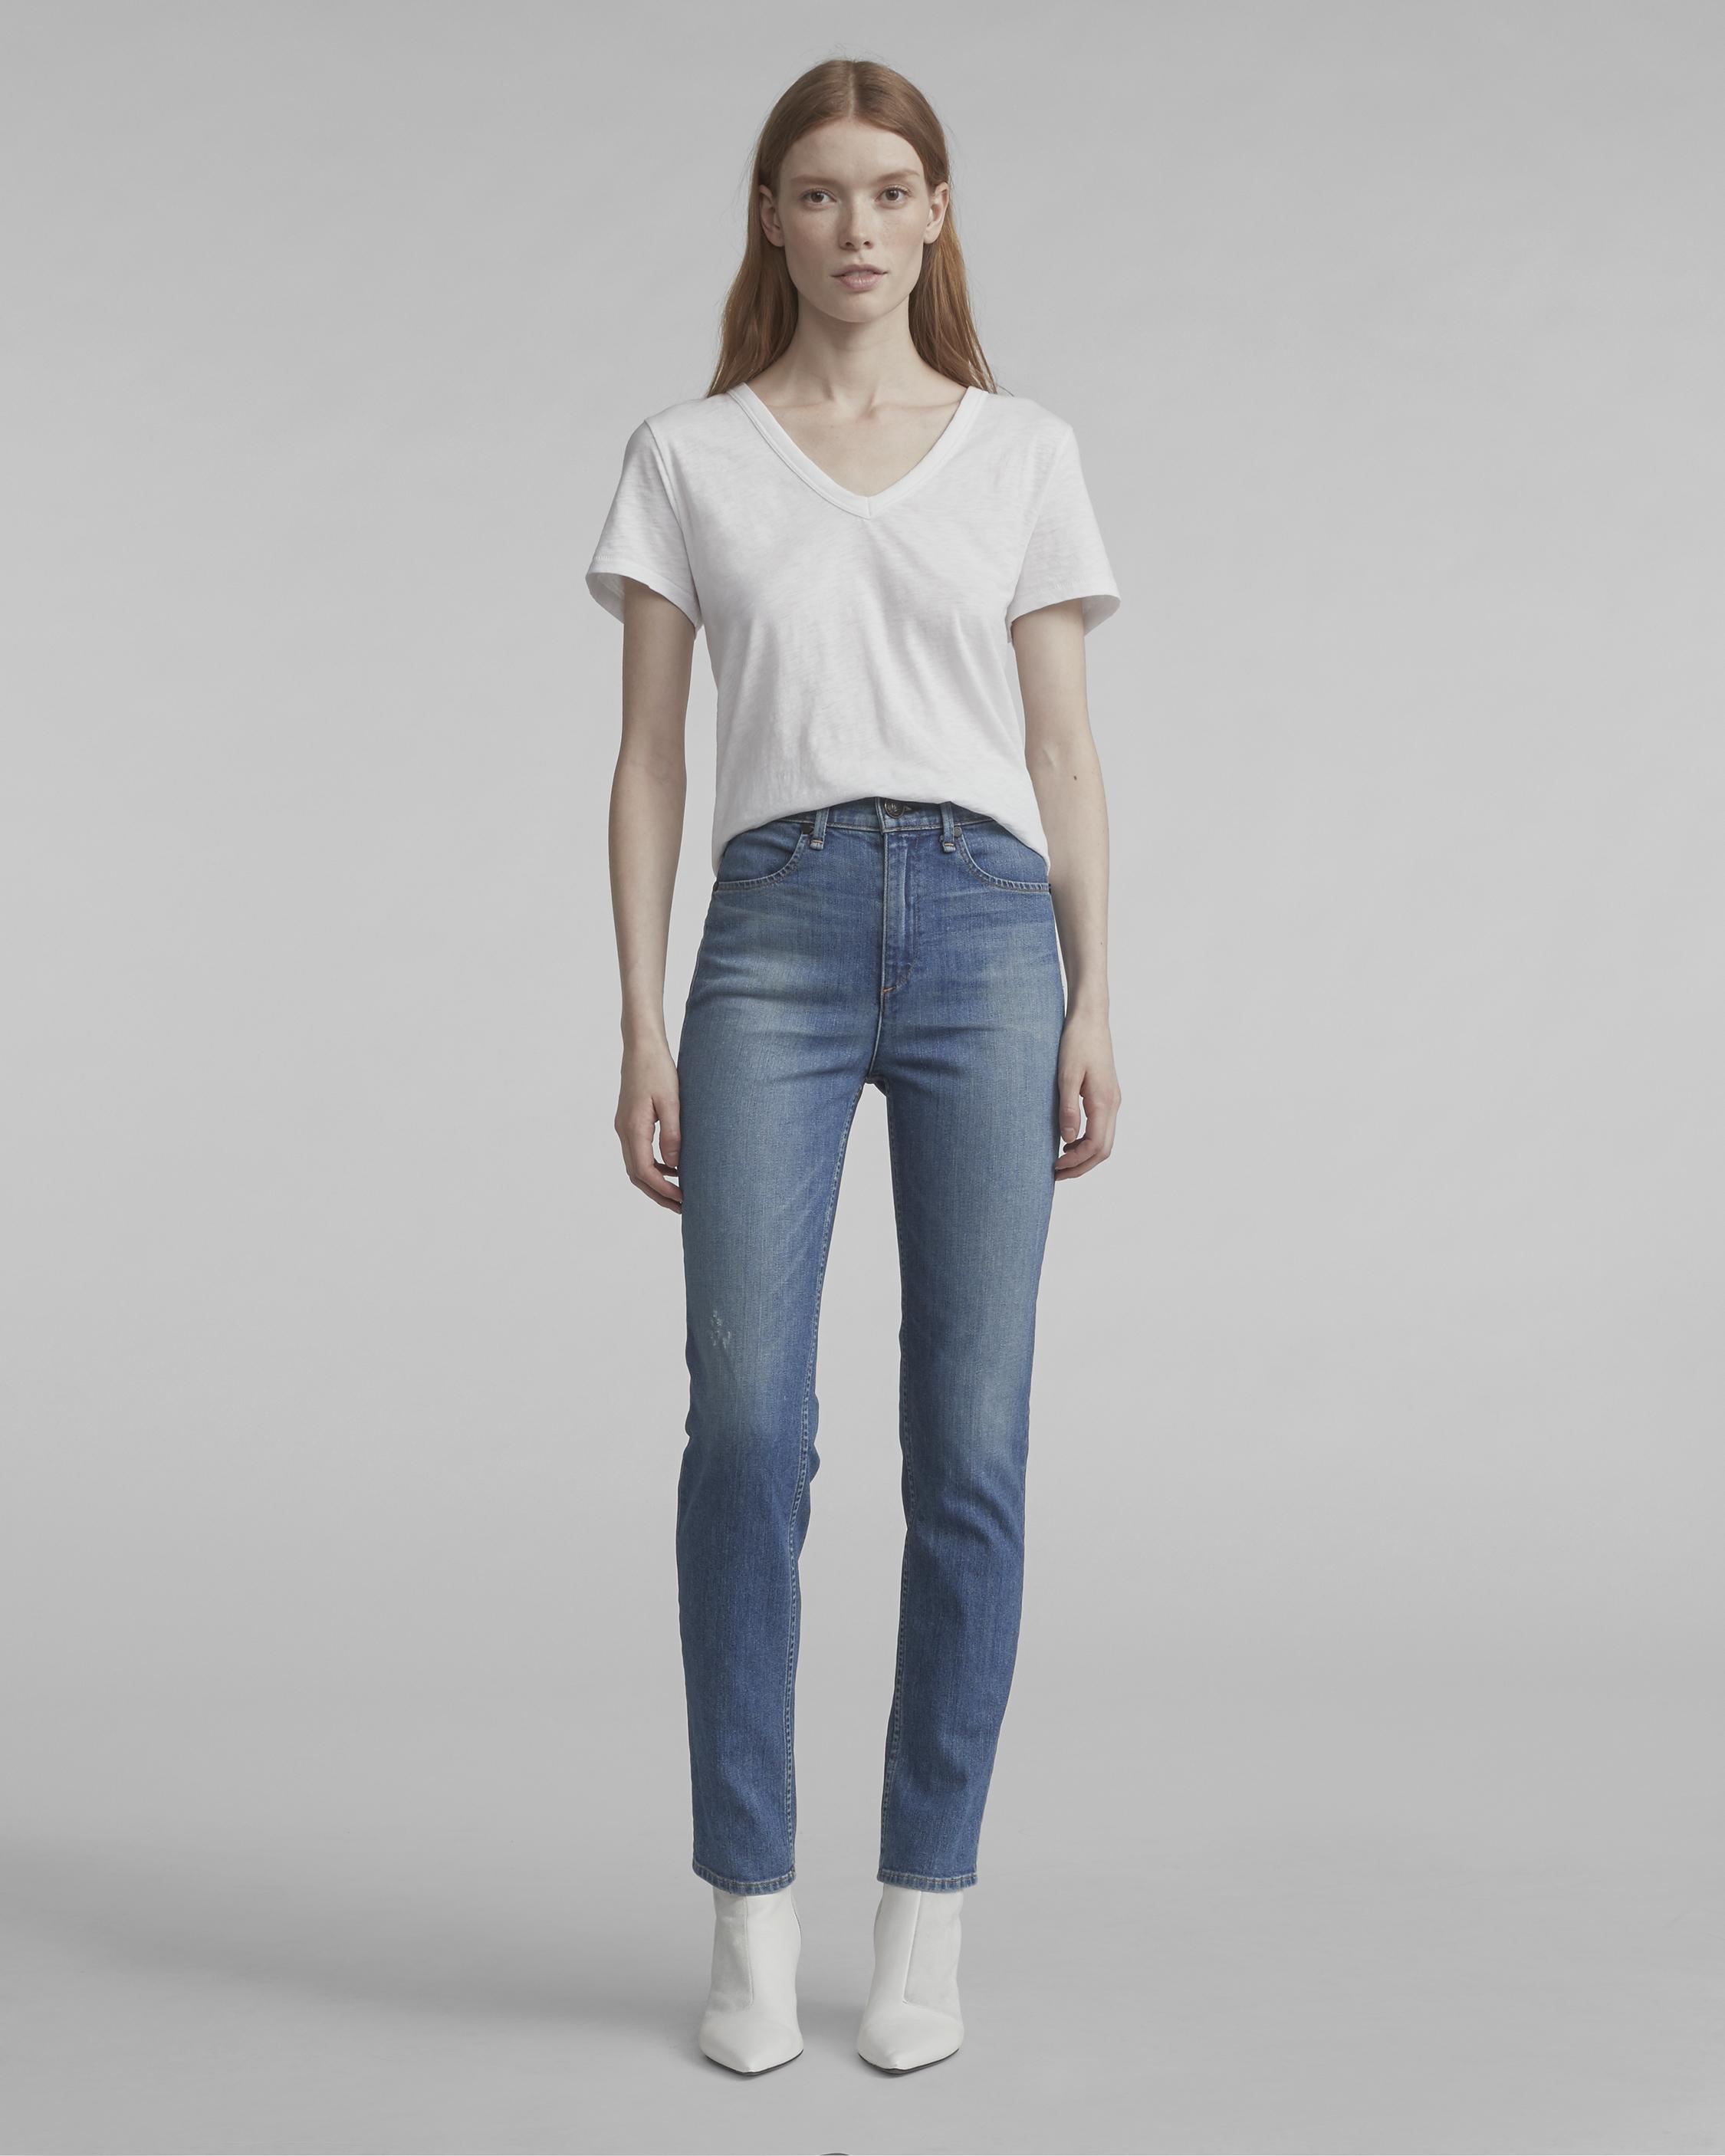 white amiri jeans mens